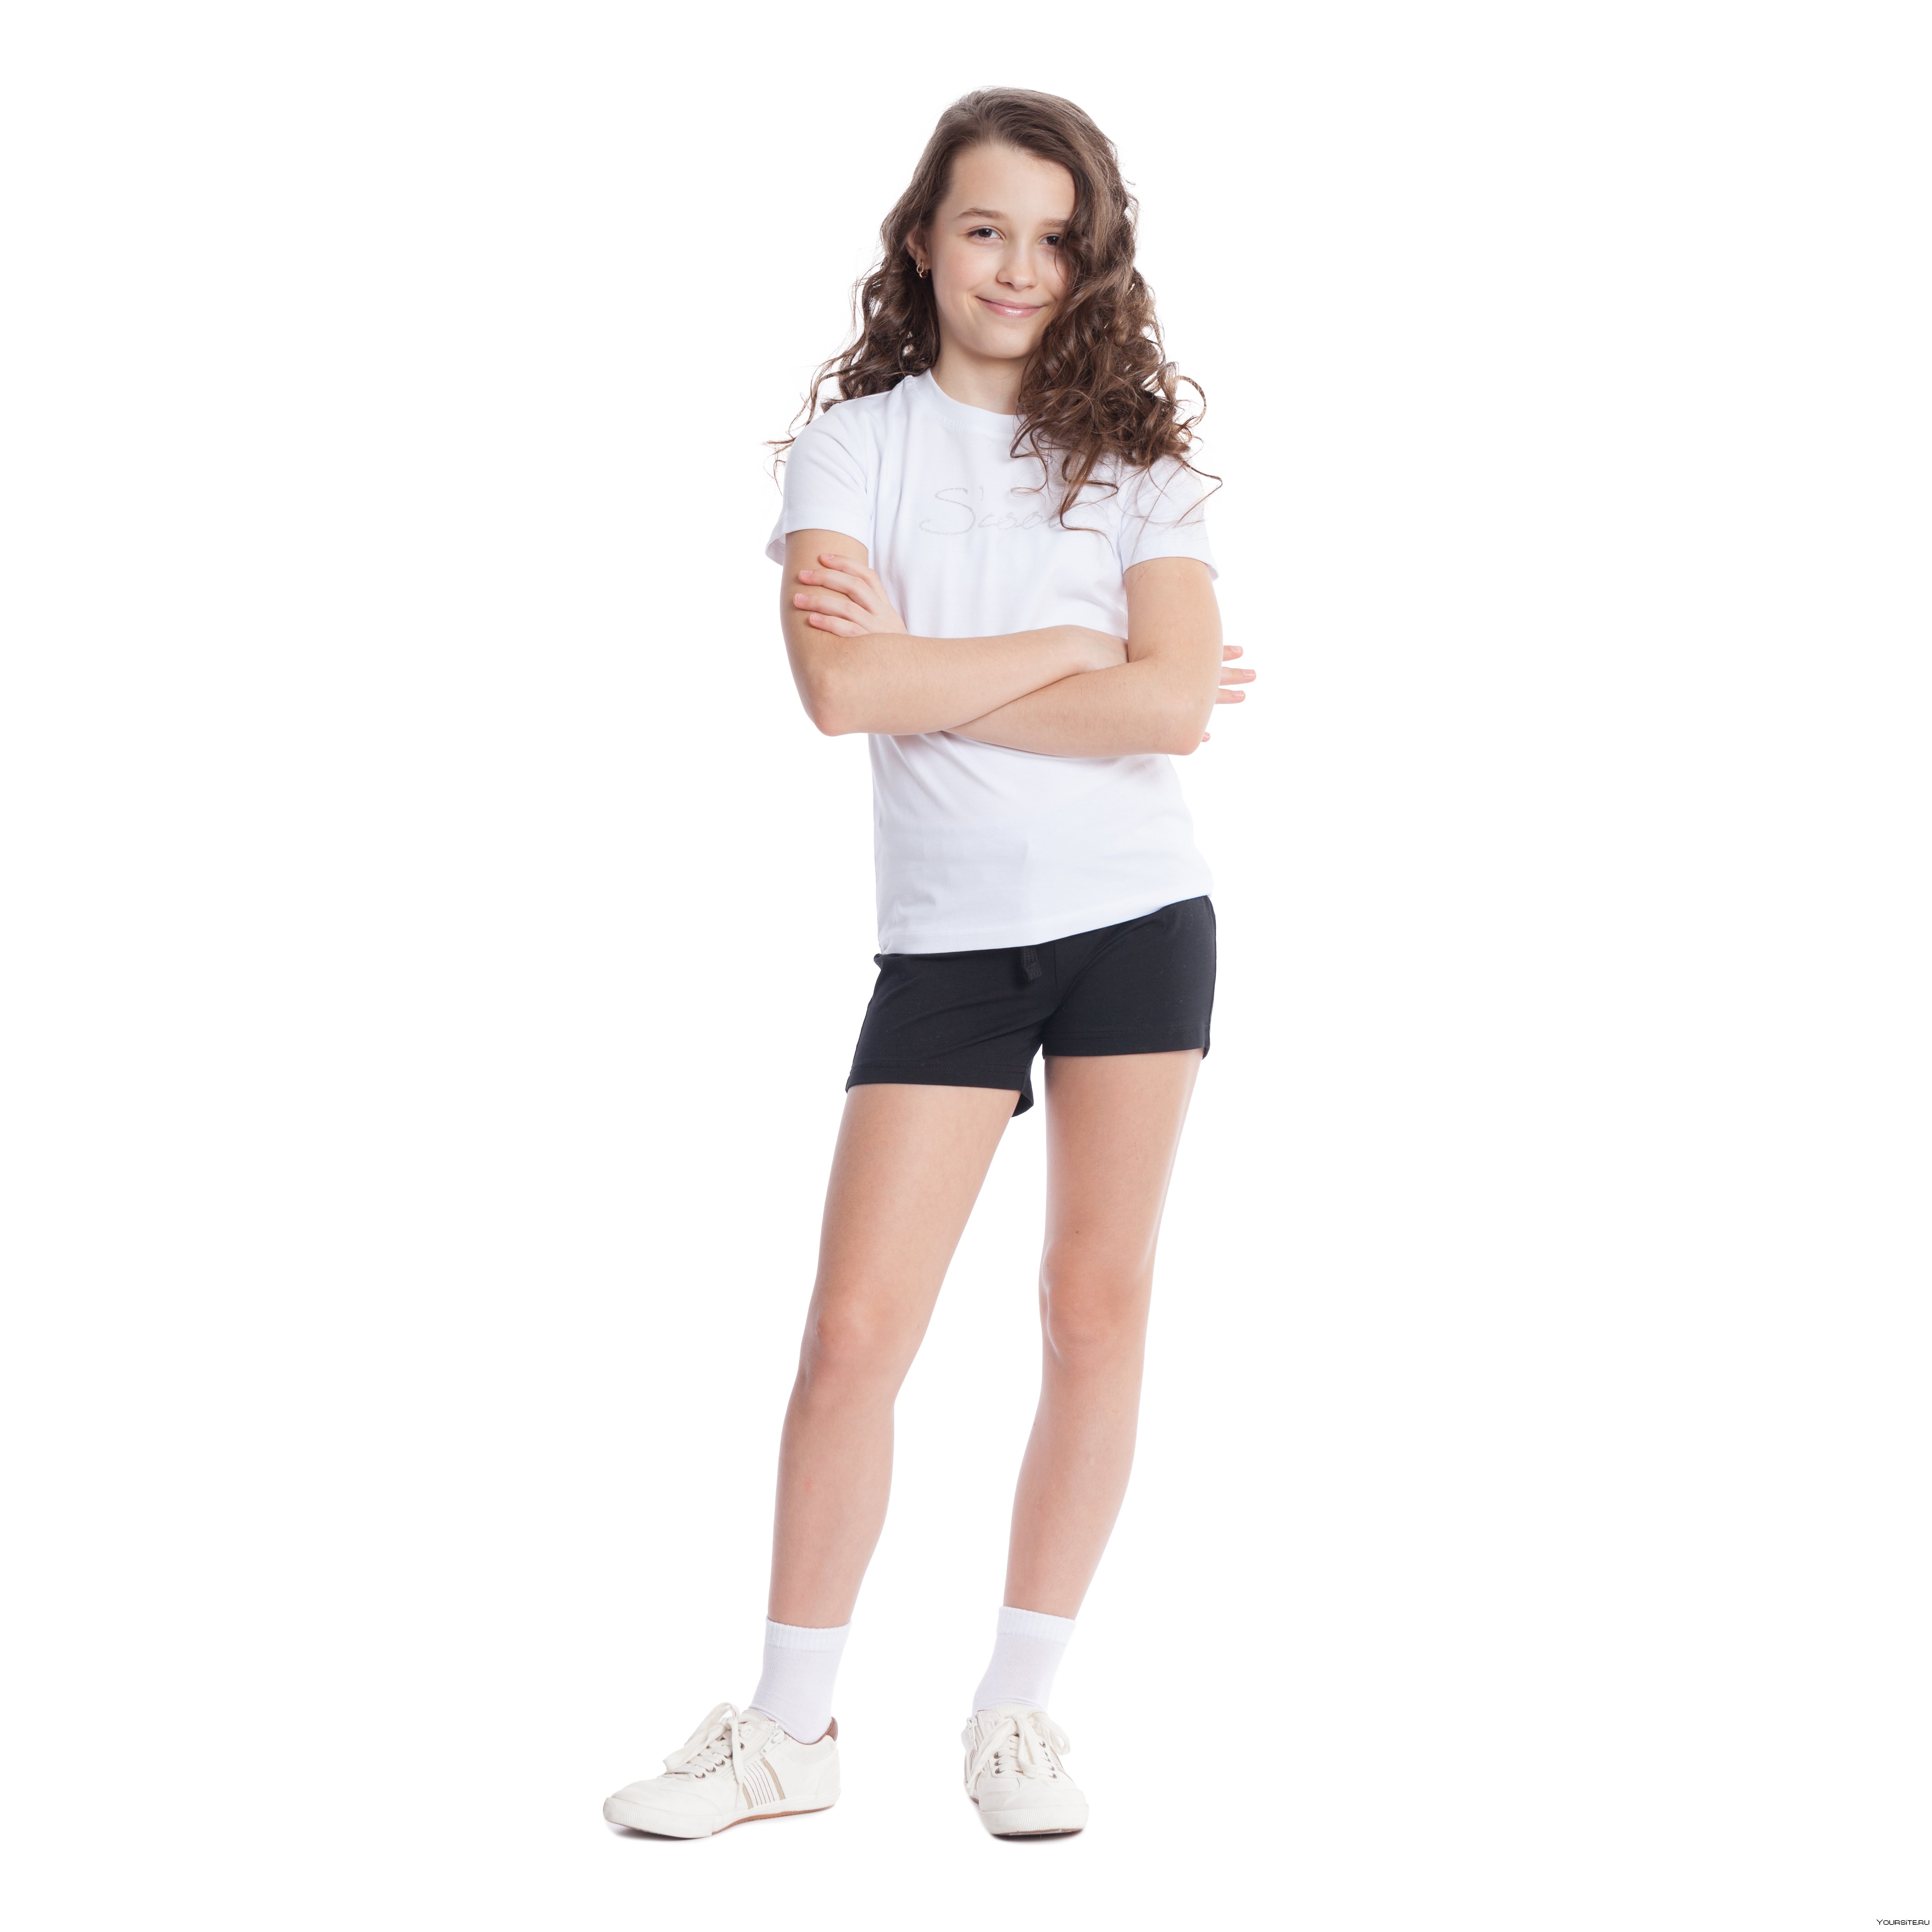 Футболки и шорты для девочек. Физкультурная форма для девочек. Девочка в шортах и майки. Спортивные шорты для девочек. Белая футболка и черные шорты.